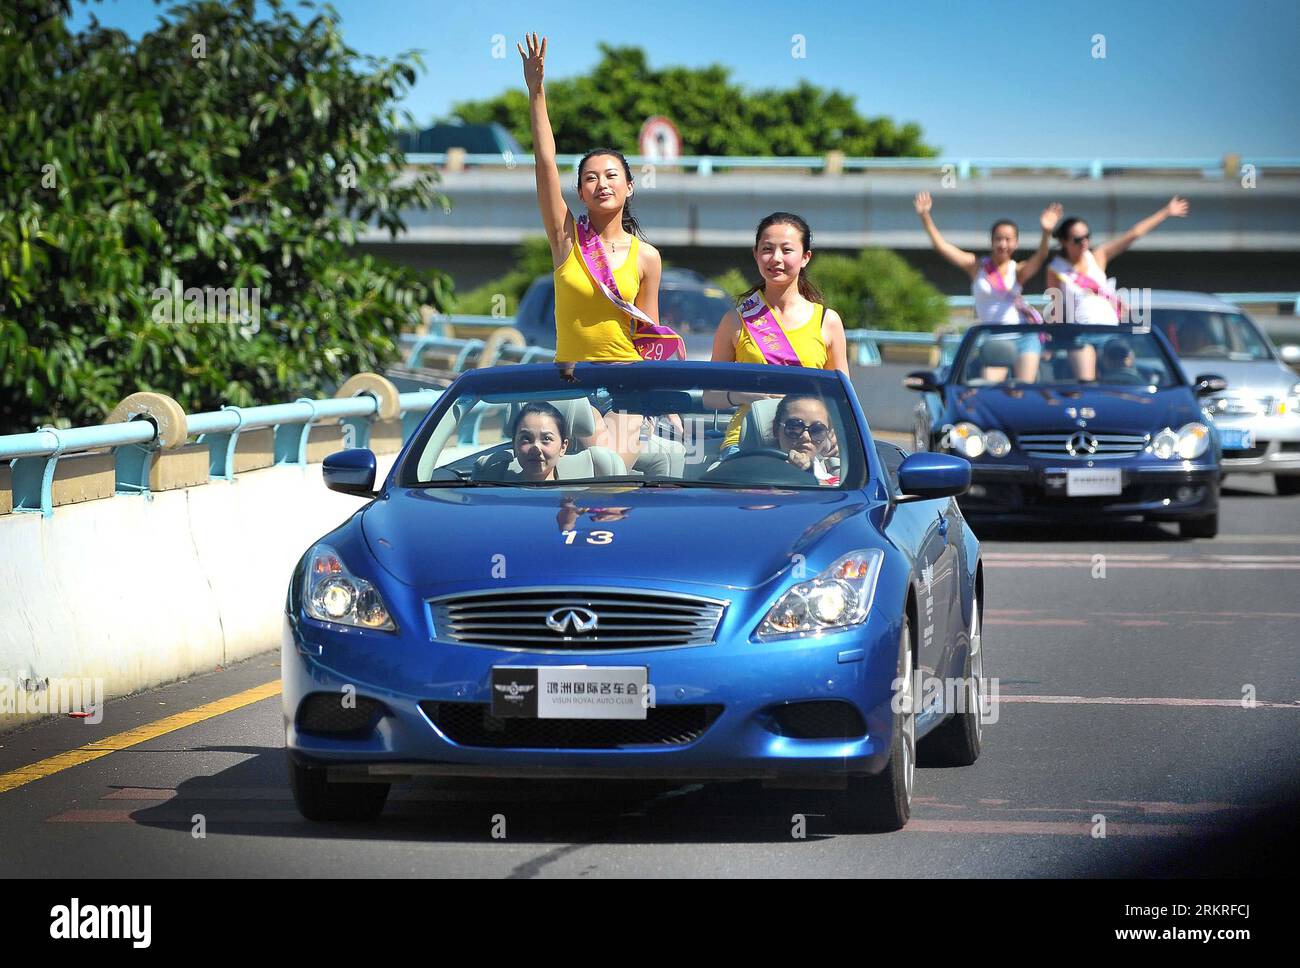 Bildnummer: 58232414 Datum: 12.07.2012 Copyright: Imago/XINHUA (120712) -- HAIKOU, 12 de julio de 2012 (Xinhua) -- Modelos de automóviles en vehículos de lujo asisten a un desfile para la 2012 Exposición Internacional de Automoción de China Hainan en Haikou, capital de la provincia de Hainan del sur de China, 12 de julio de 2012. En total, 50 modelos de automóviles con 25 roadsters superiores se vieron en las calles principales de Haikou para promover la exposición que se inaugurará el 13 de julio. (Xinhua / Guo Cheng) (mp) CHINA-HAINAN-INTERNATIONAL AUTOMOTION EXPOSITION (CN) PUBLICATIONxNOTxINxCHN Wirtschaft Autoindustrie Automesse Auto Parade Korso Autokorso premium Foto de stock